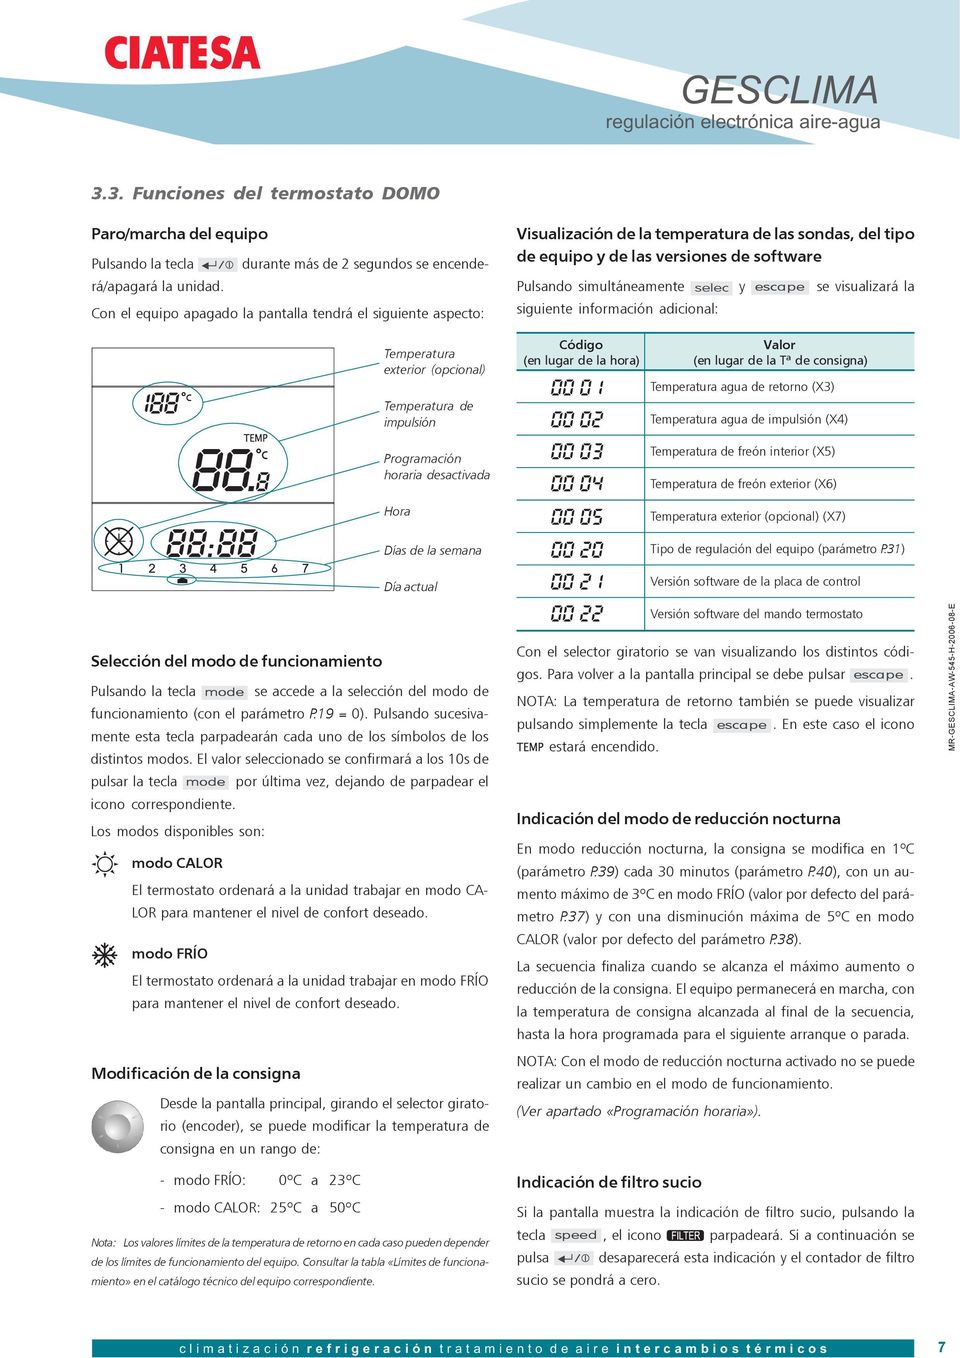 MANUAL DE REGULACIÓN. regulación electrónica GESCLIMA. equipos aire-agua Nº 545 H 2006 / - PDF Free Download